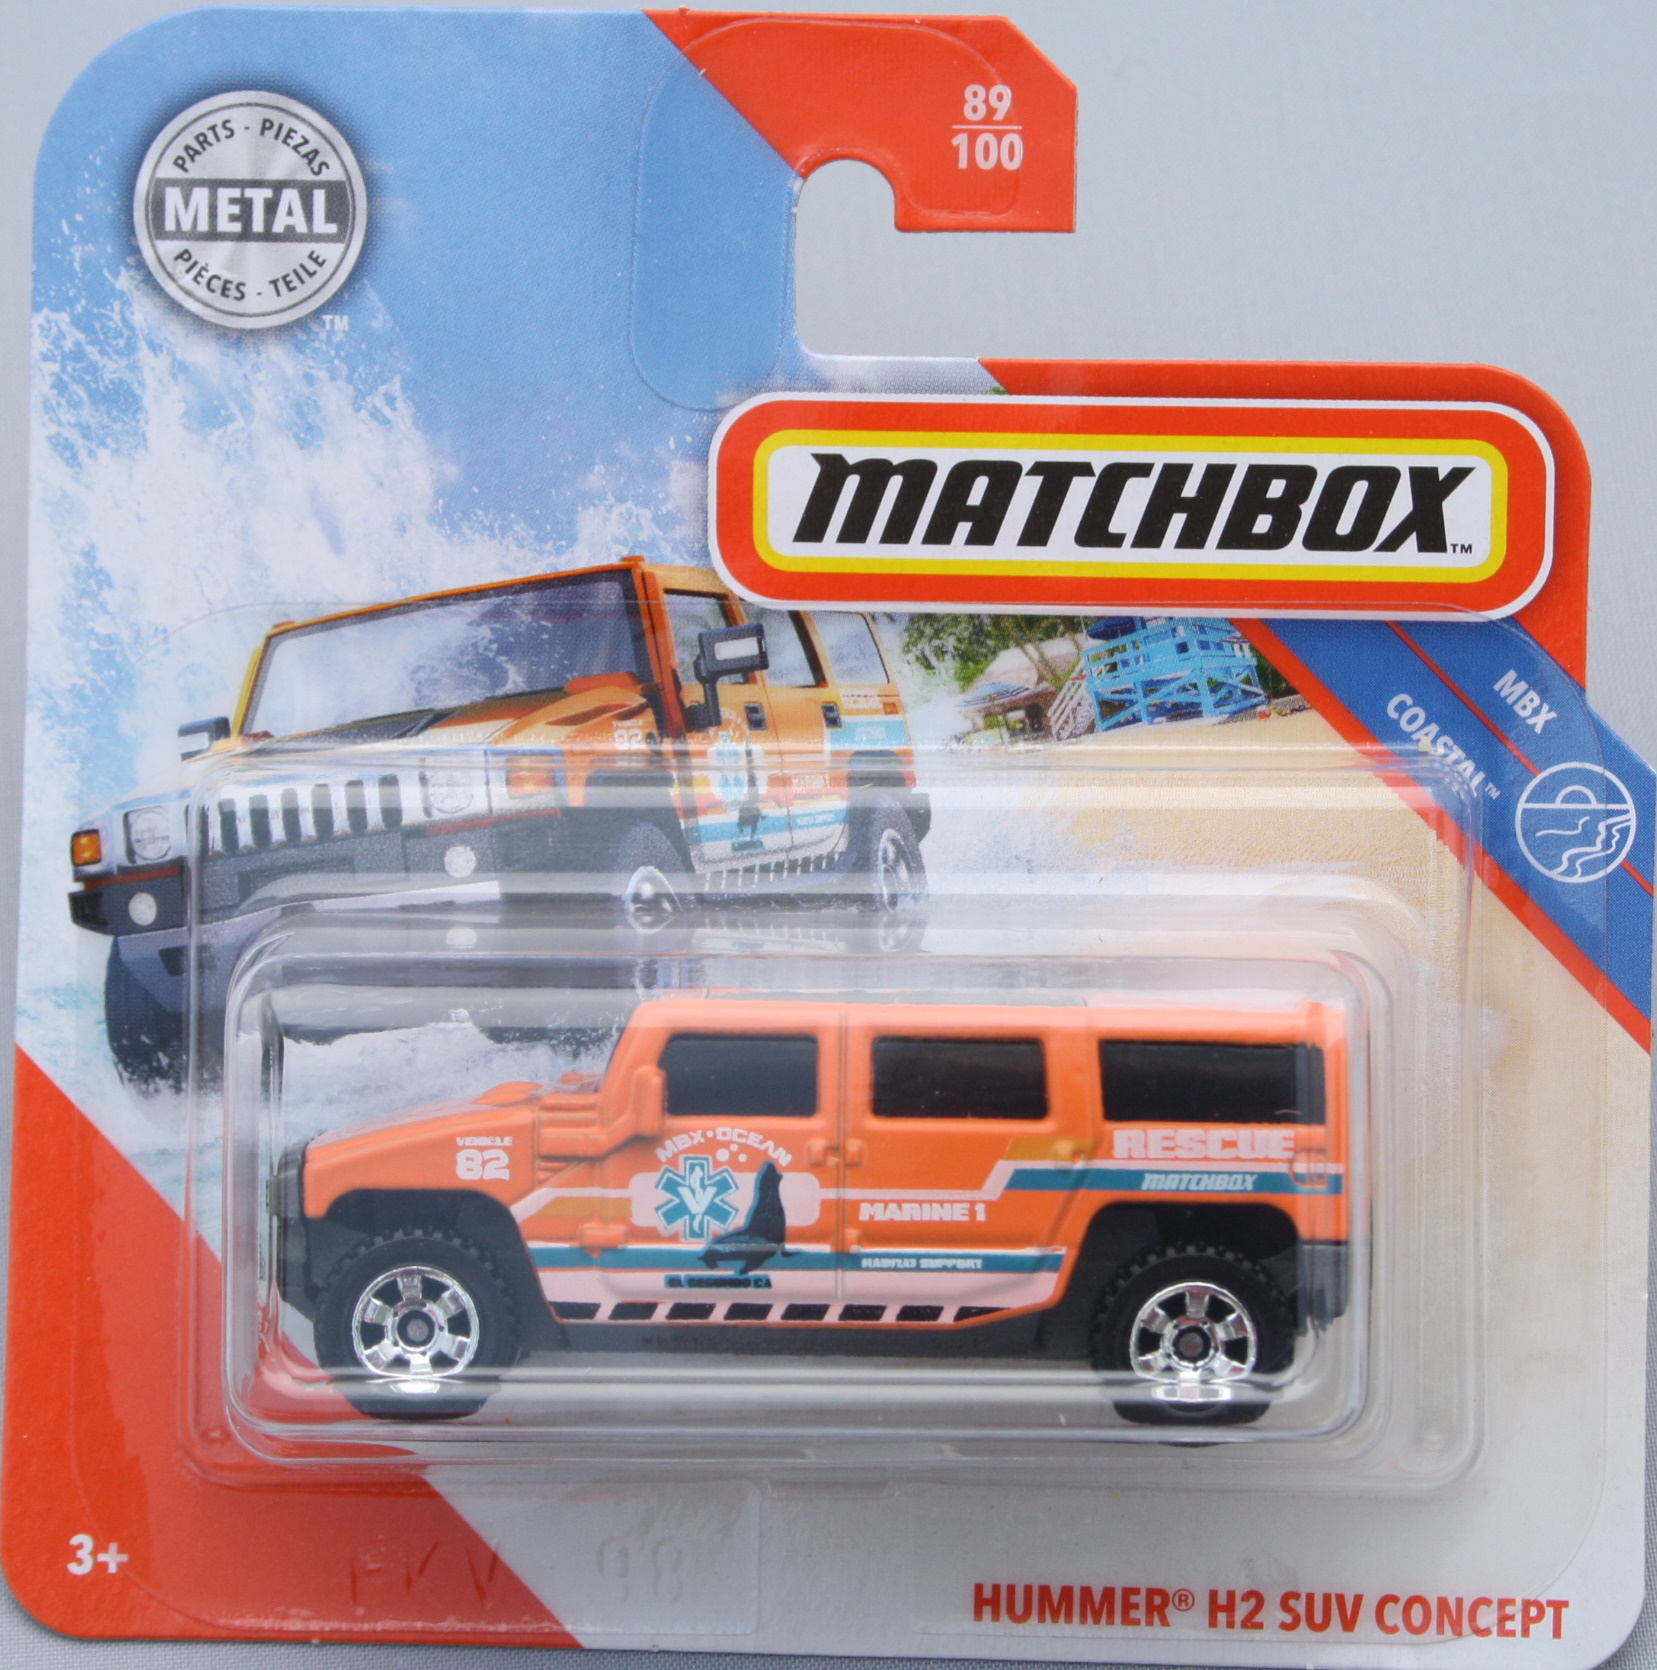 Matchbox Hummer H2 SUV Concept - Orange 1:64